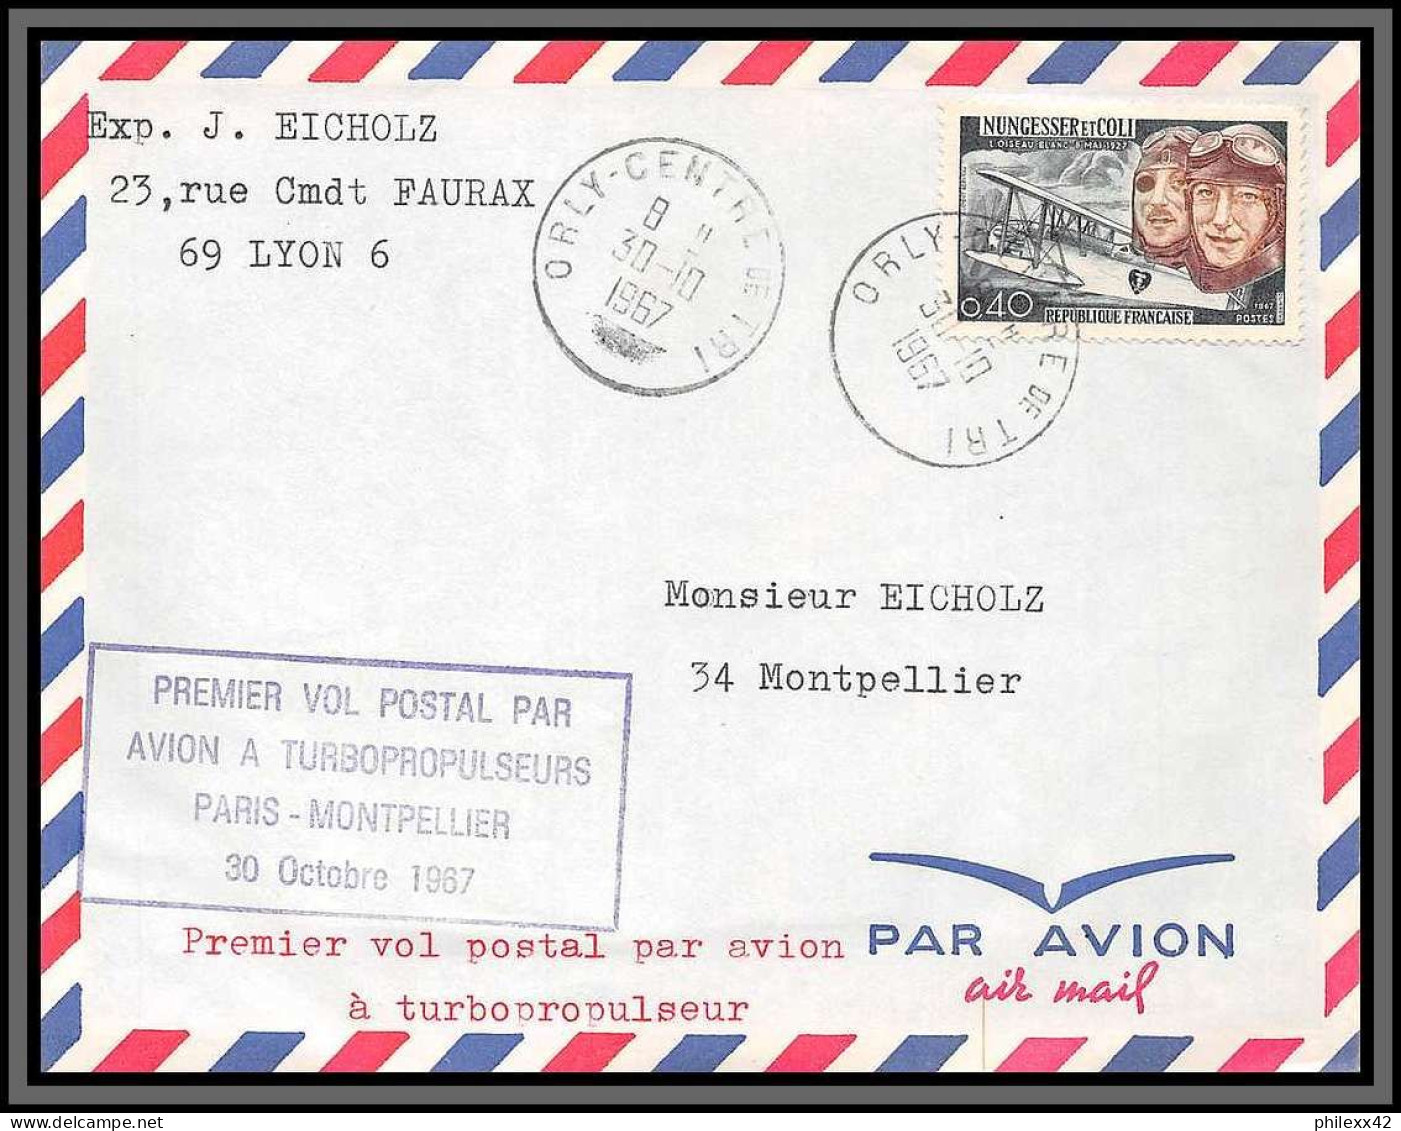 10251 1er Vol Postal Par Avion A Tubopropulseurs Paris Montpellier Orly 30/10/1967 Lettre Cover France Aviation  - Primi Voli